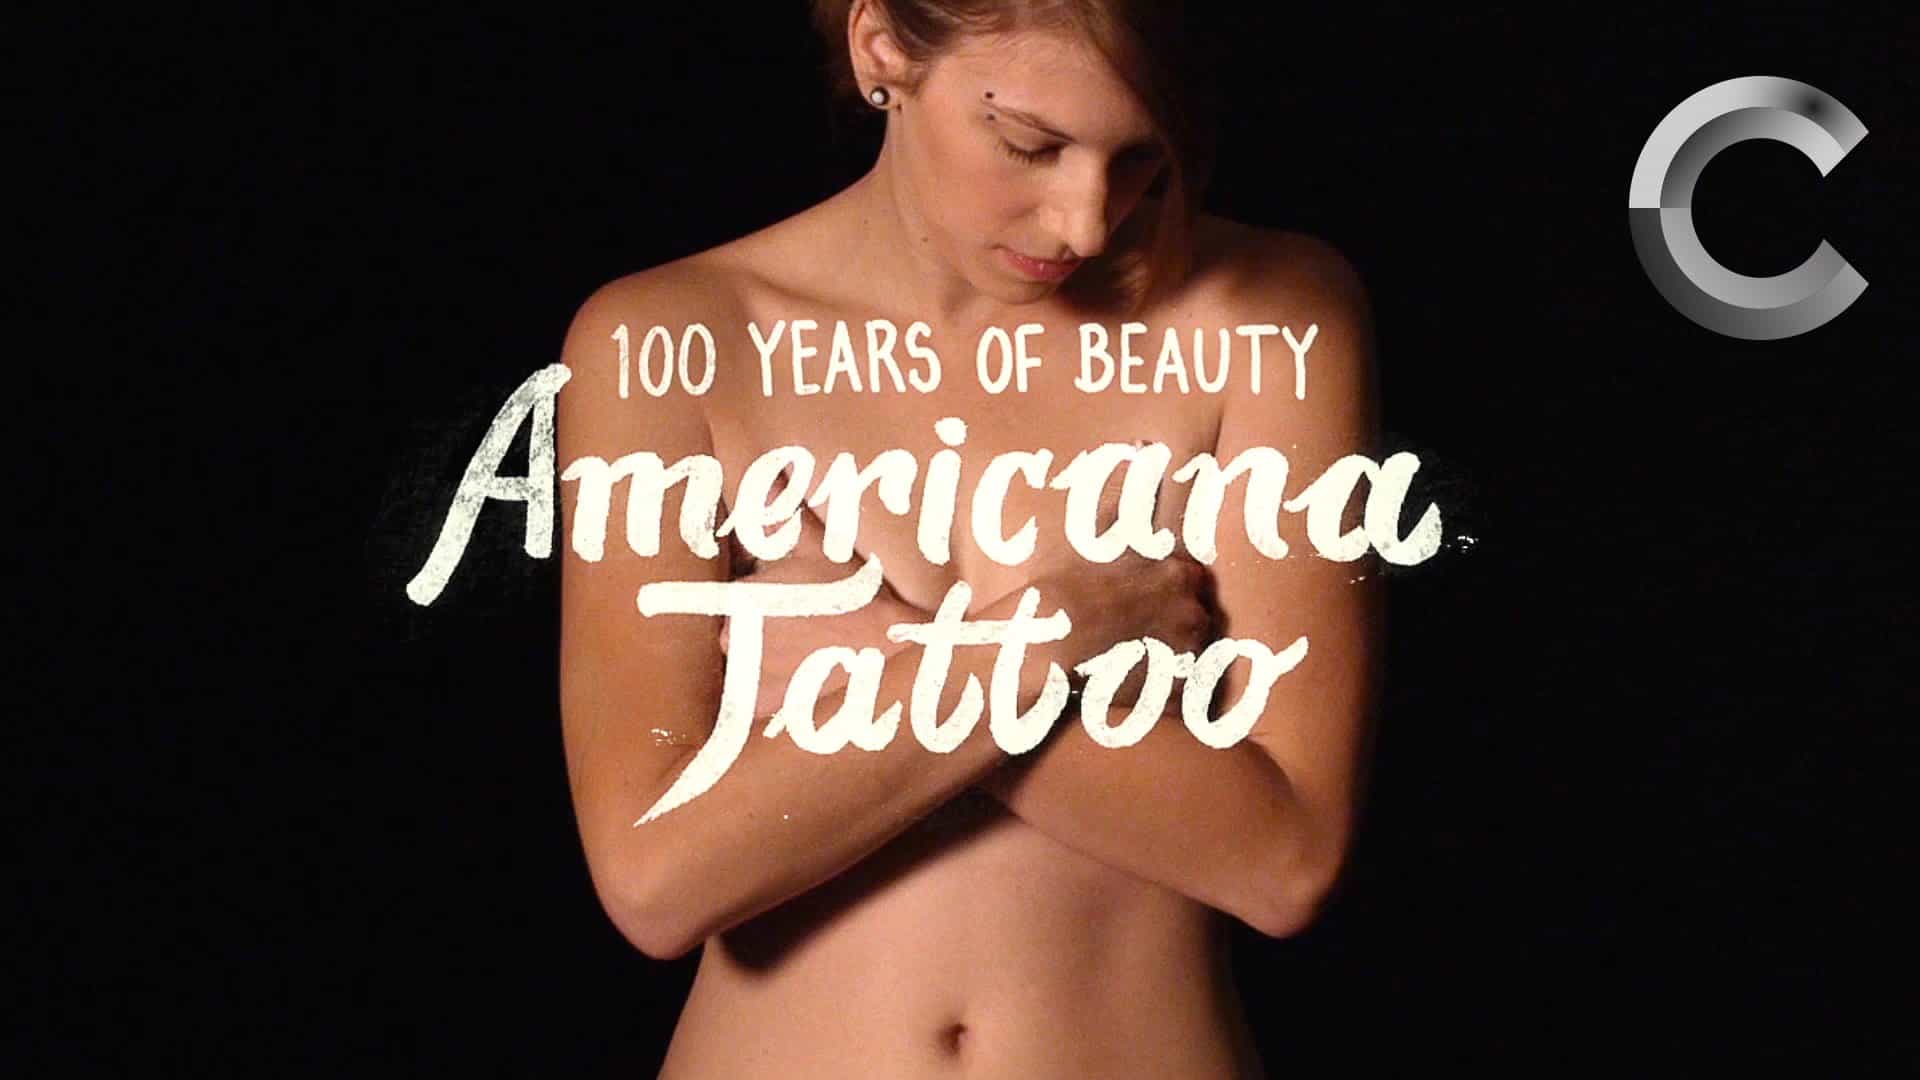 Tatuagens no estilo dos últimos 100 anos